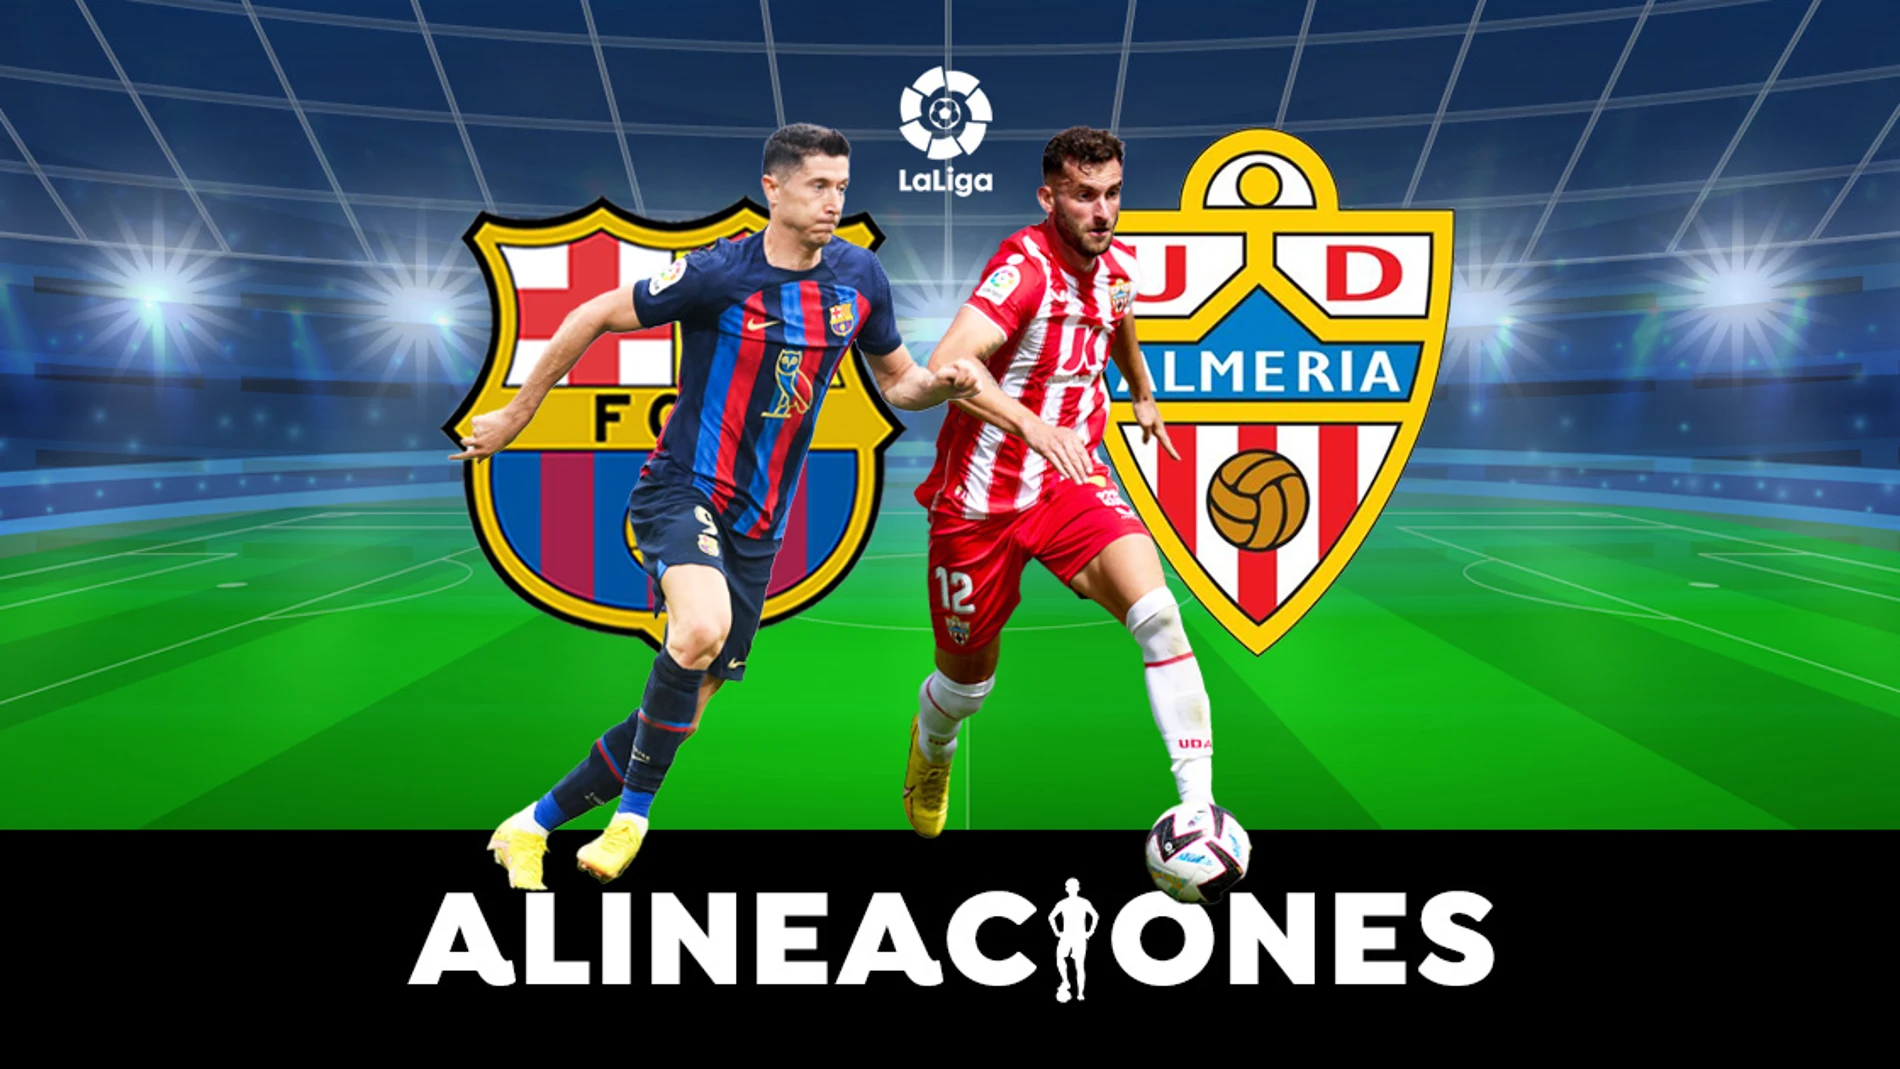 Alineación OFICIAL del Barcelona hoy contra el Almería en el partido LaLiga